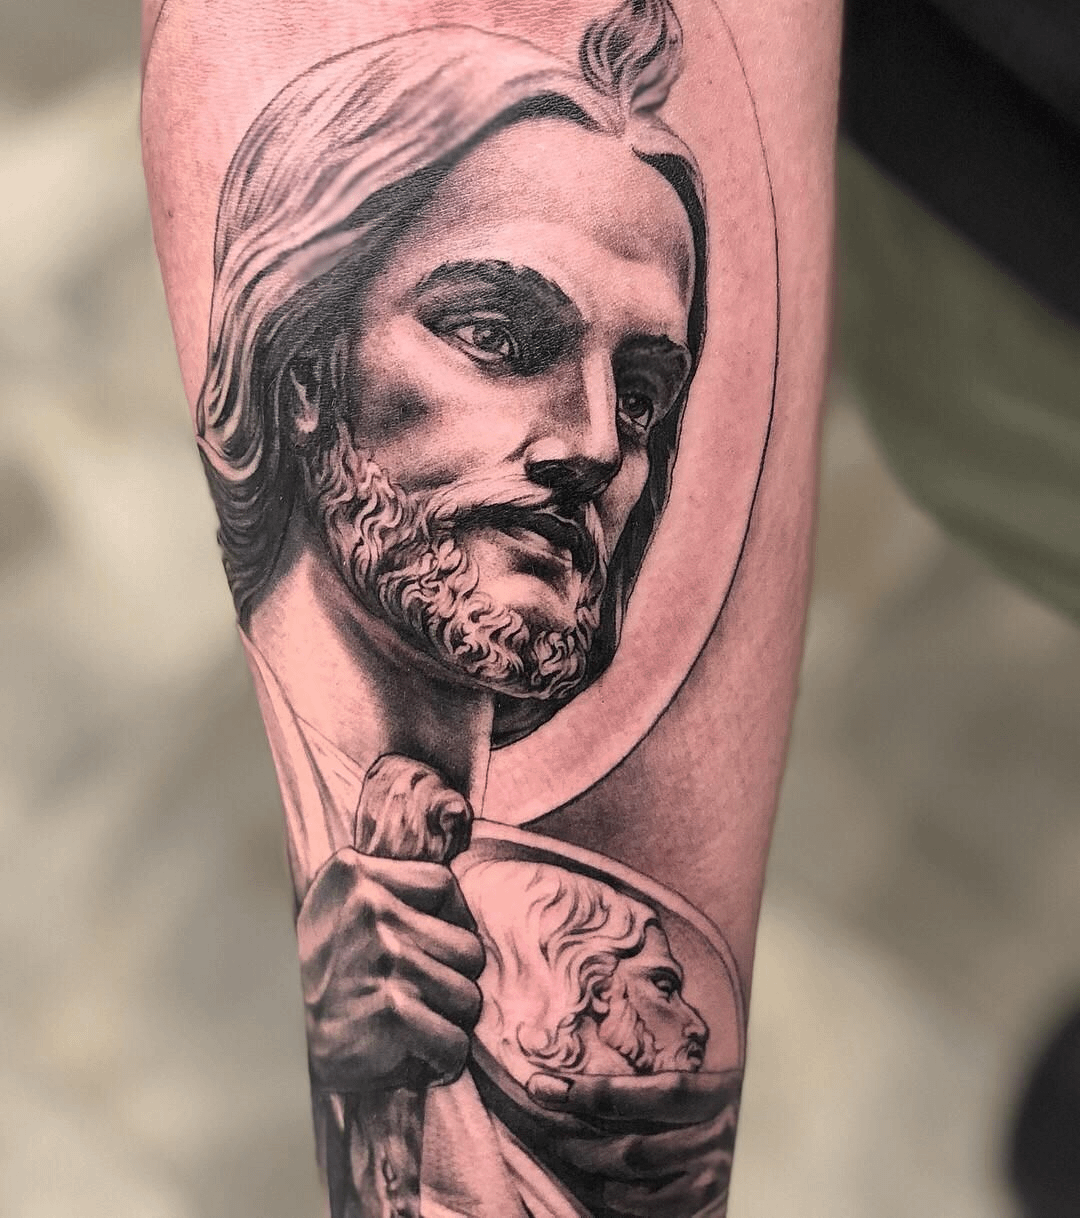 Popular Beliefs About the San Judas Tattoo